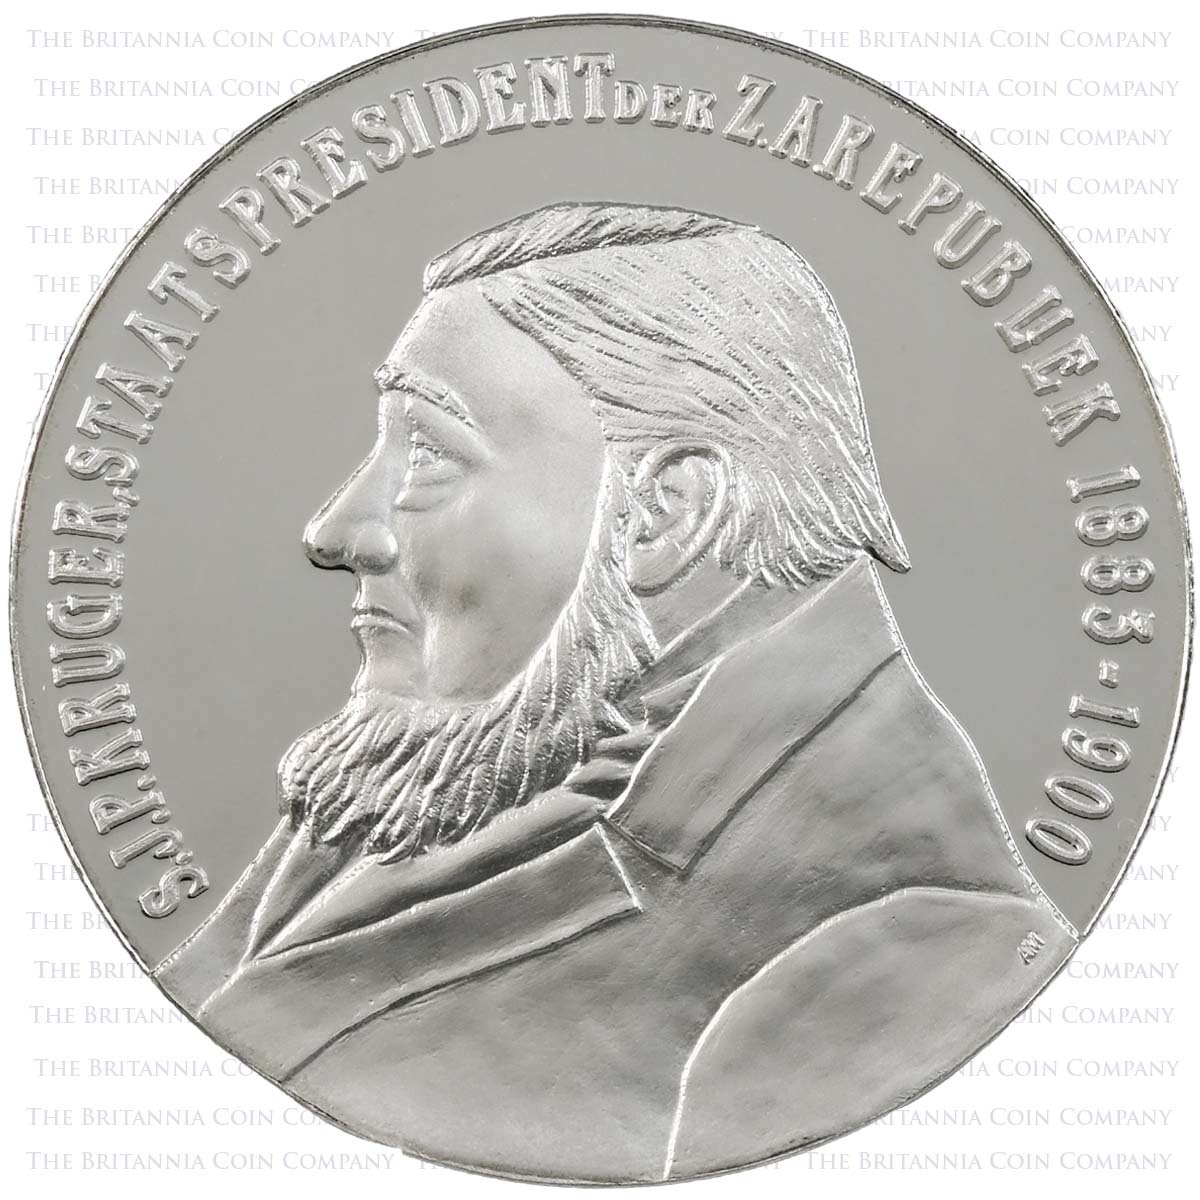 2010 4 Coin Gold Proof Krugerrand Set Paul Kruger Medallion Obverse